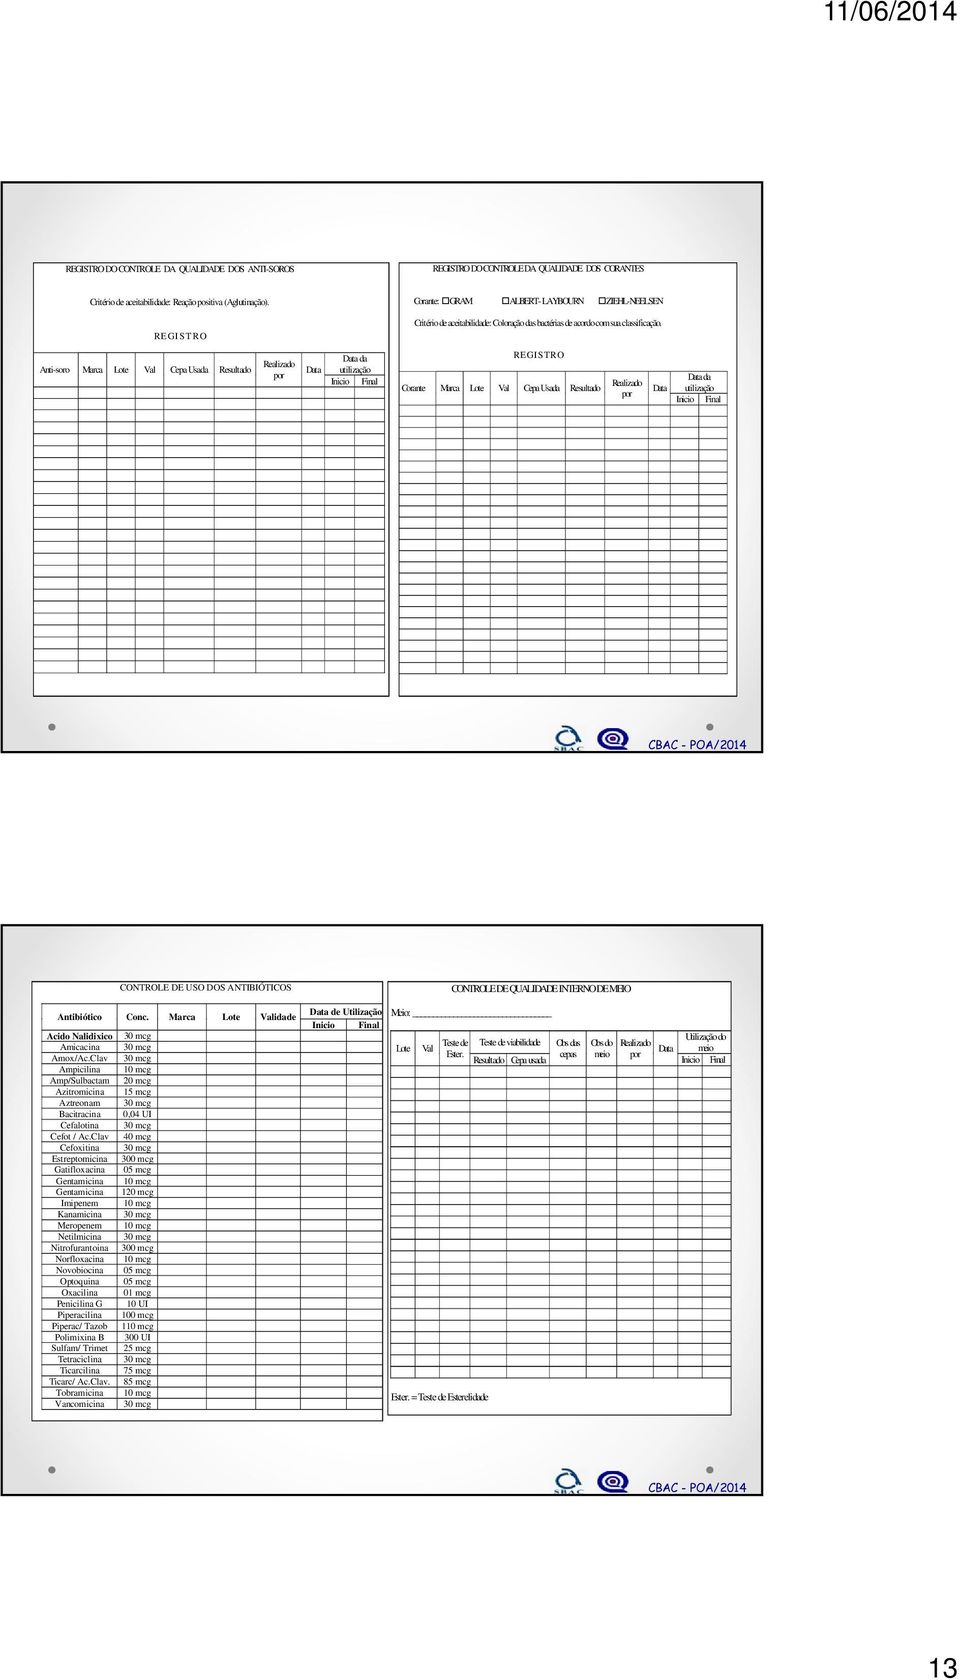 Anti-soro Marca Lote Val Cepa Usada Resultado Realizado por Data Data da utilização Inicio Final R E G I S T R O Corante Marca Lote Val Cepa Usada Resultado Realizado por Data Data da utilização